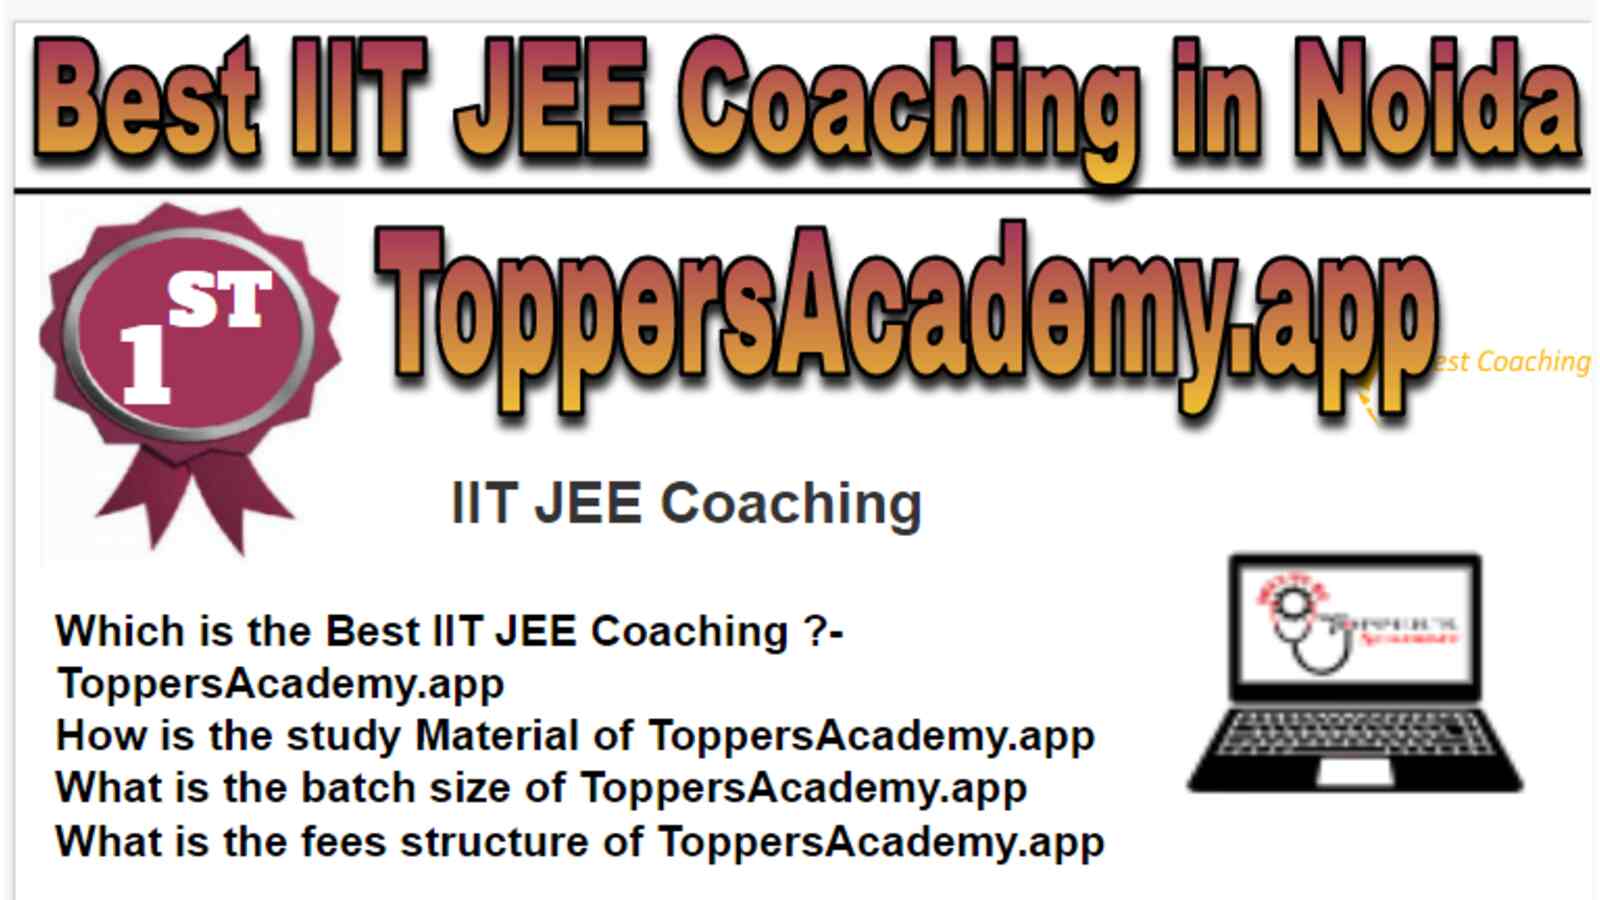 Rank 1 Best IIT JEE Coaching in Noida